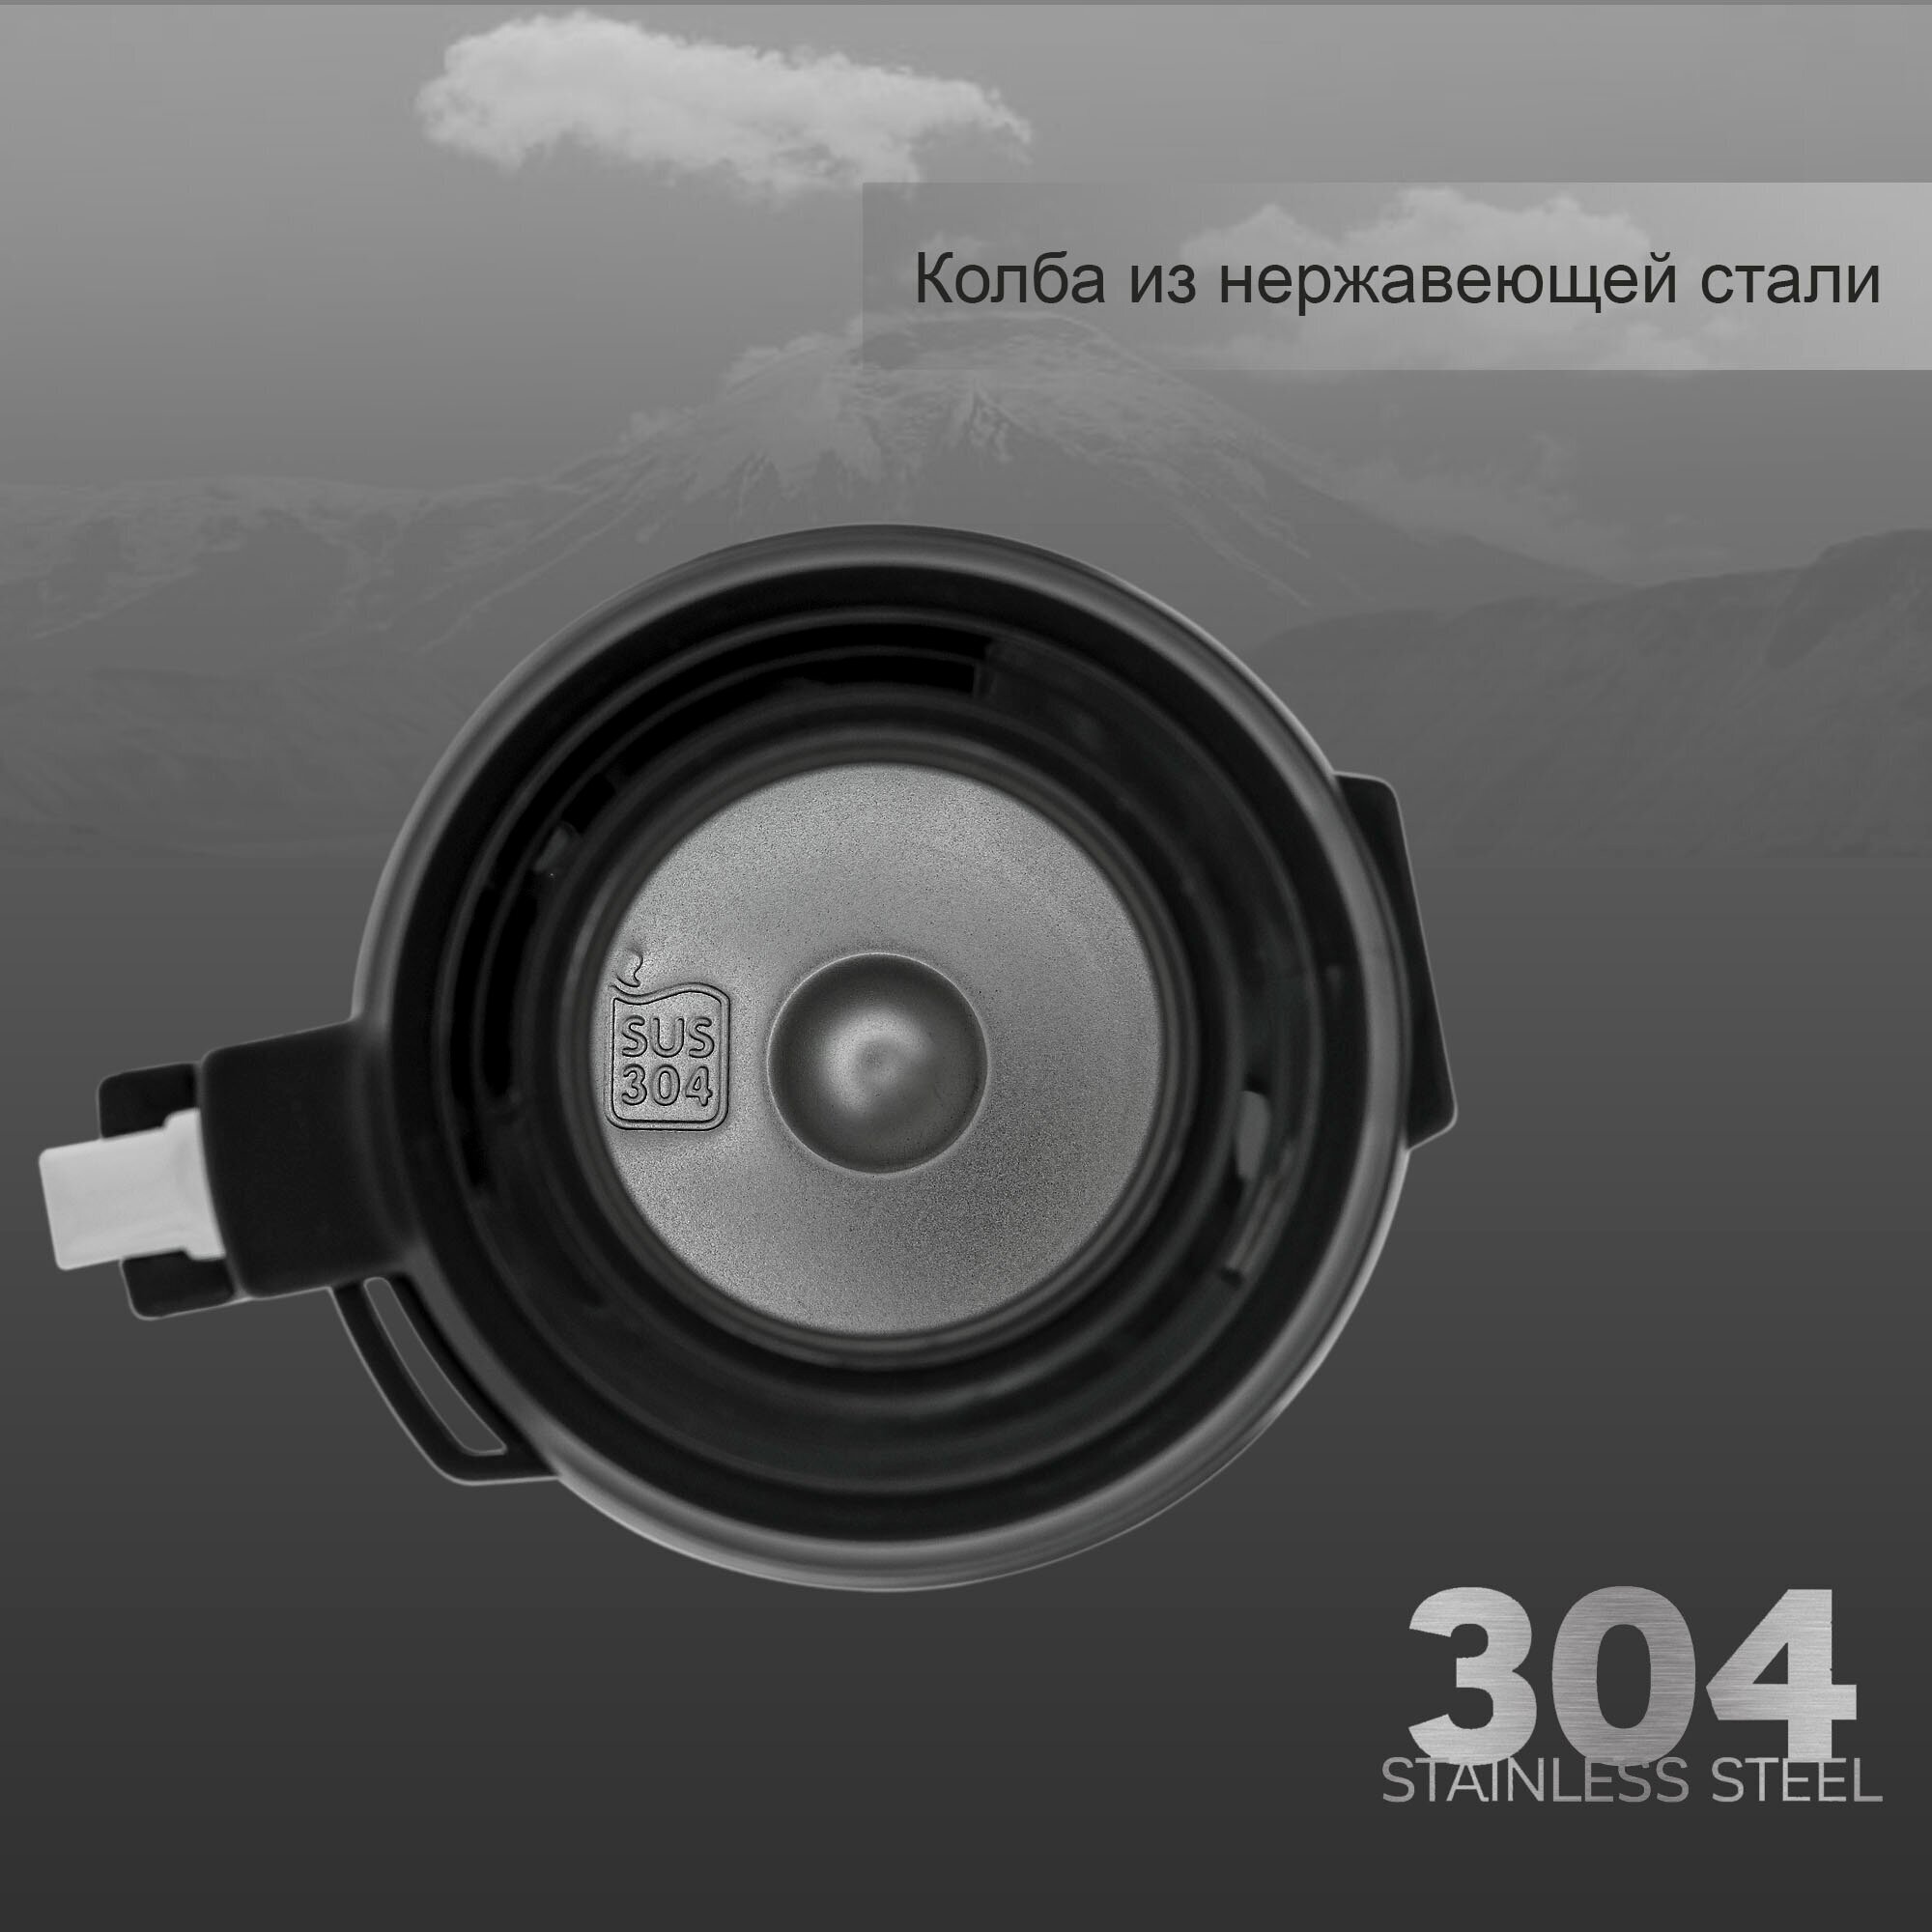 Термос вакуумный ARCUDA ARC-9011 Army seria, 2 литра, черный цвет - фотография № 4